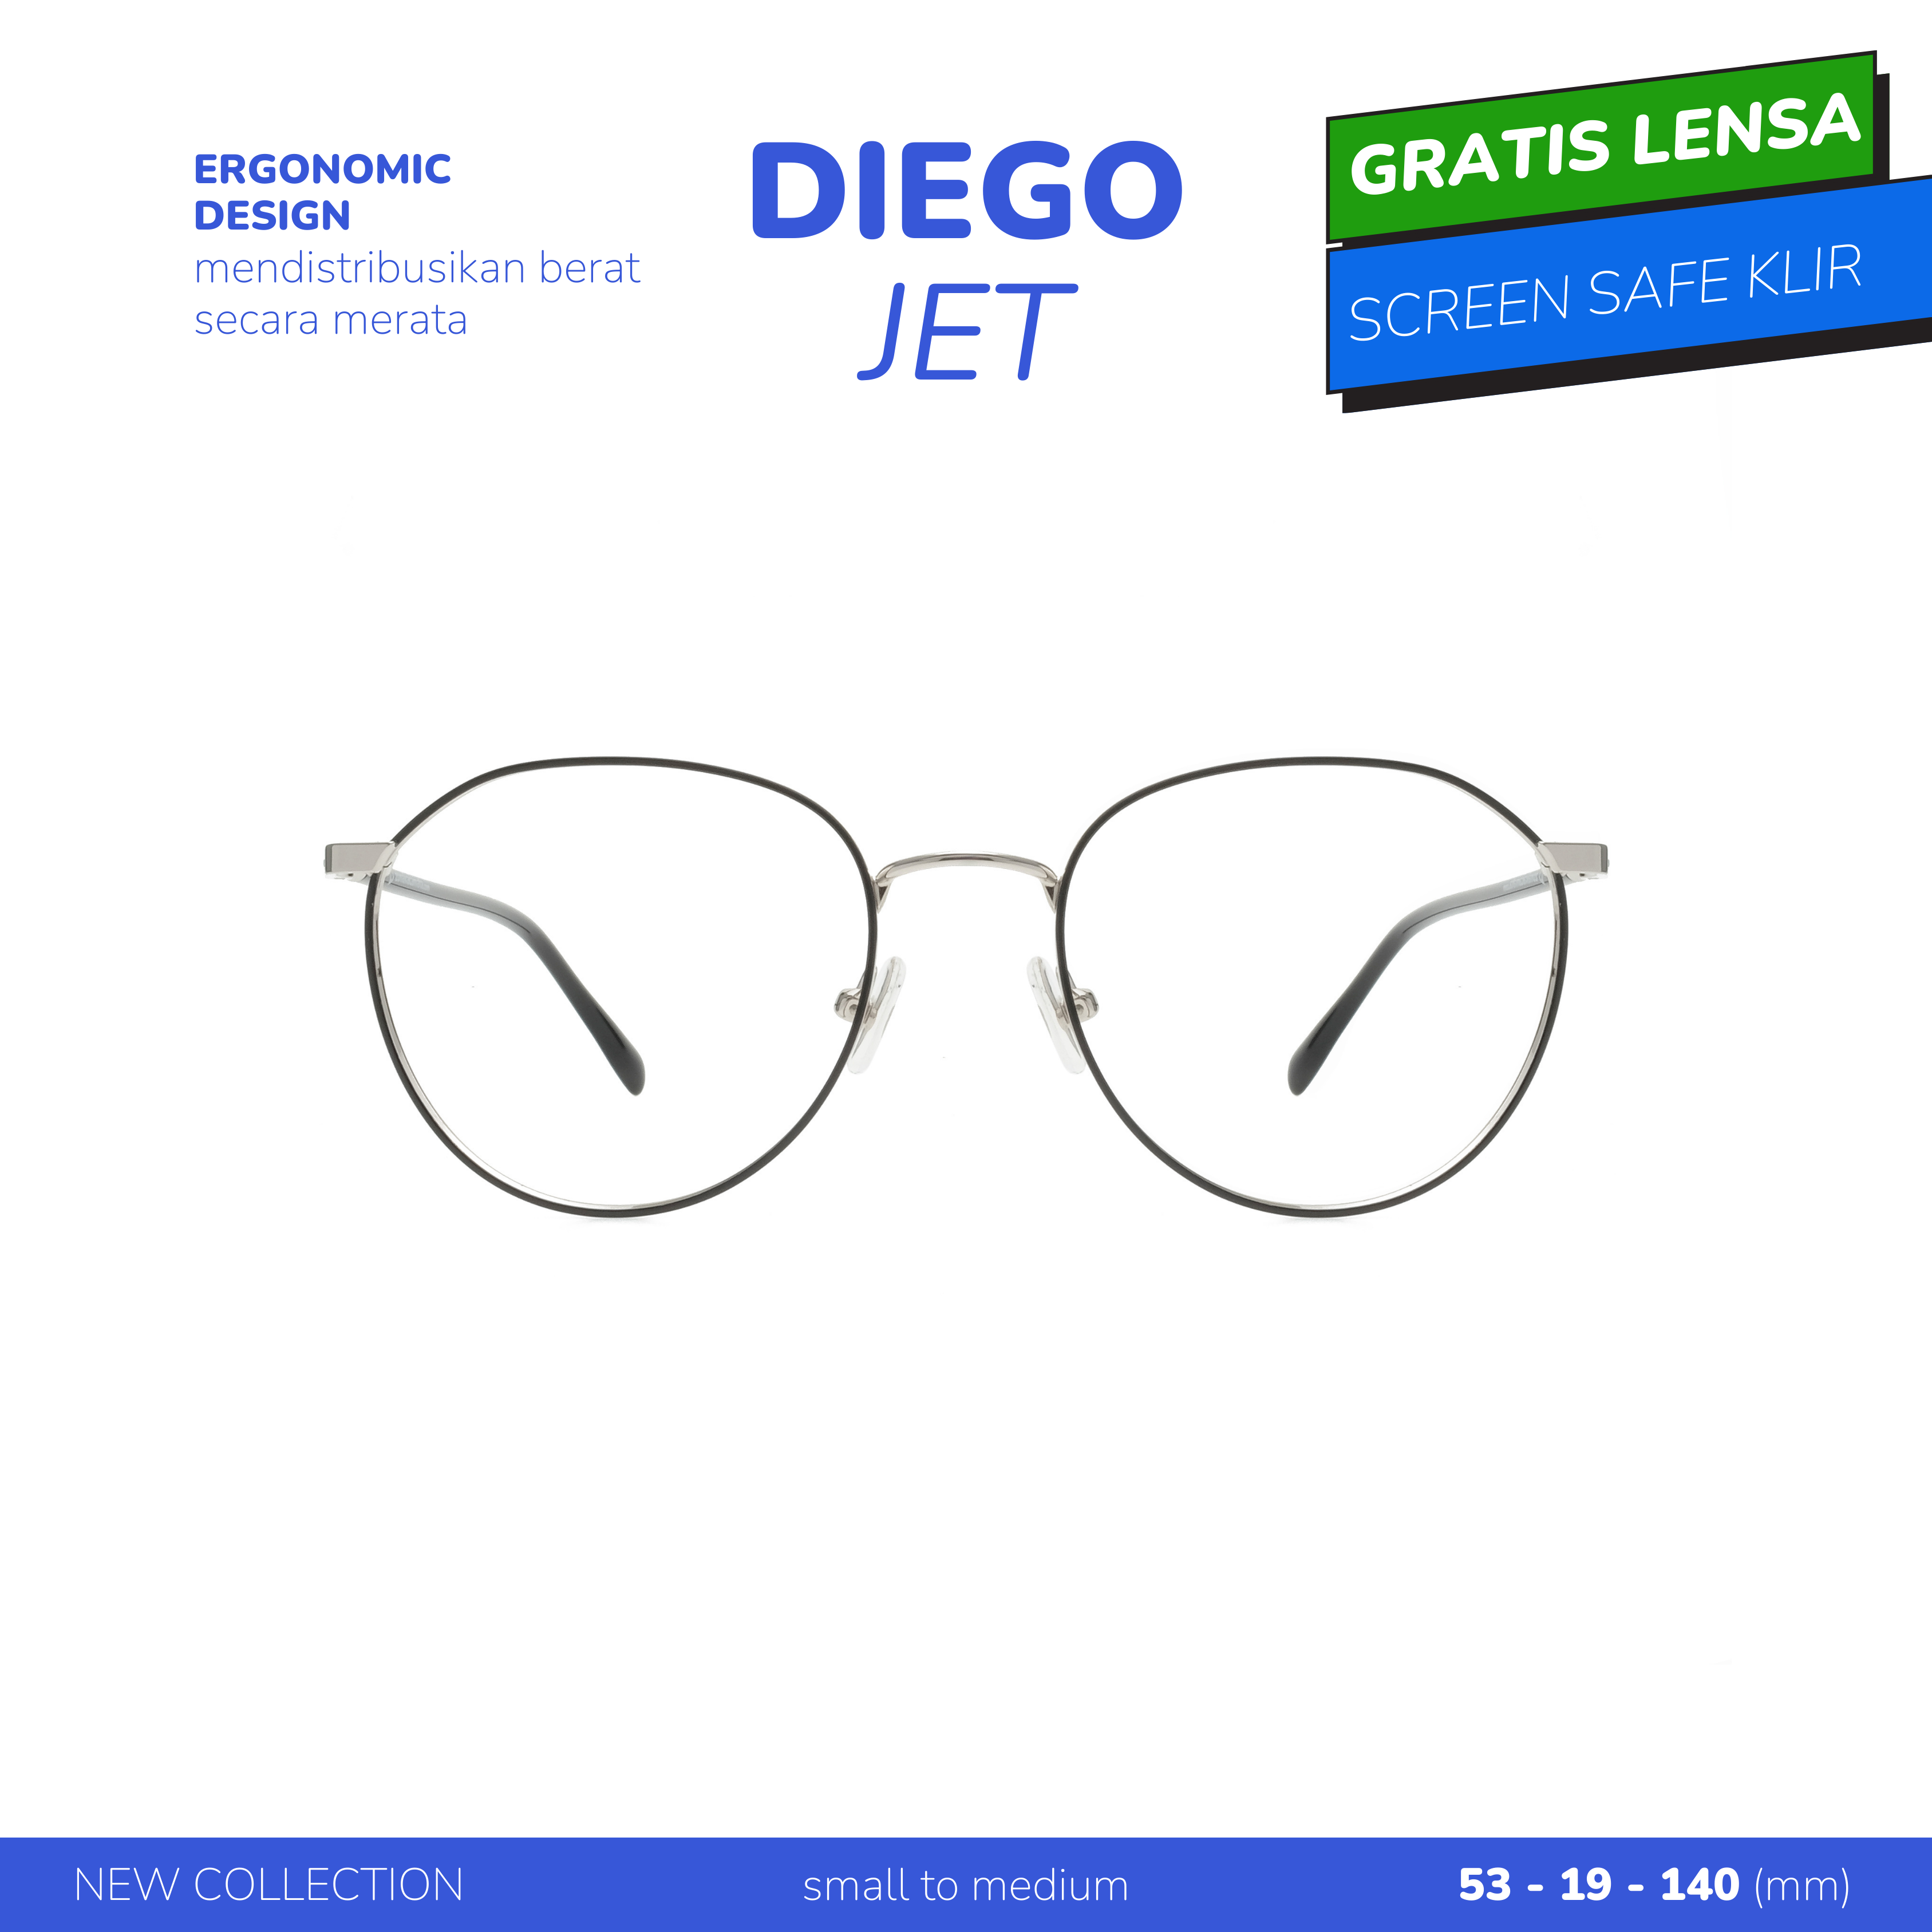 Ergonomic Design Diego